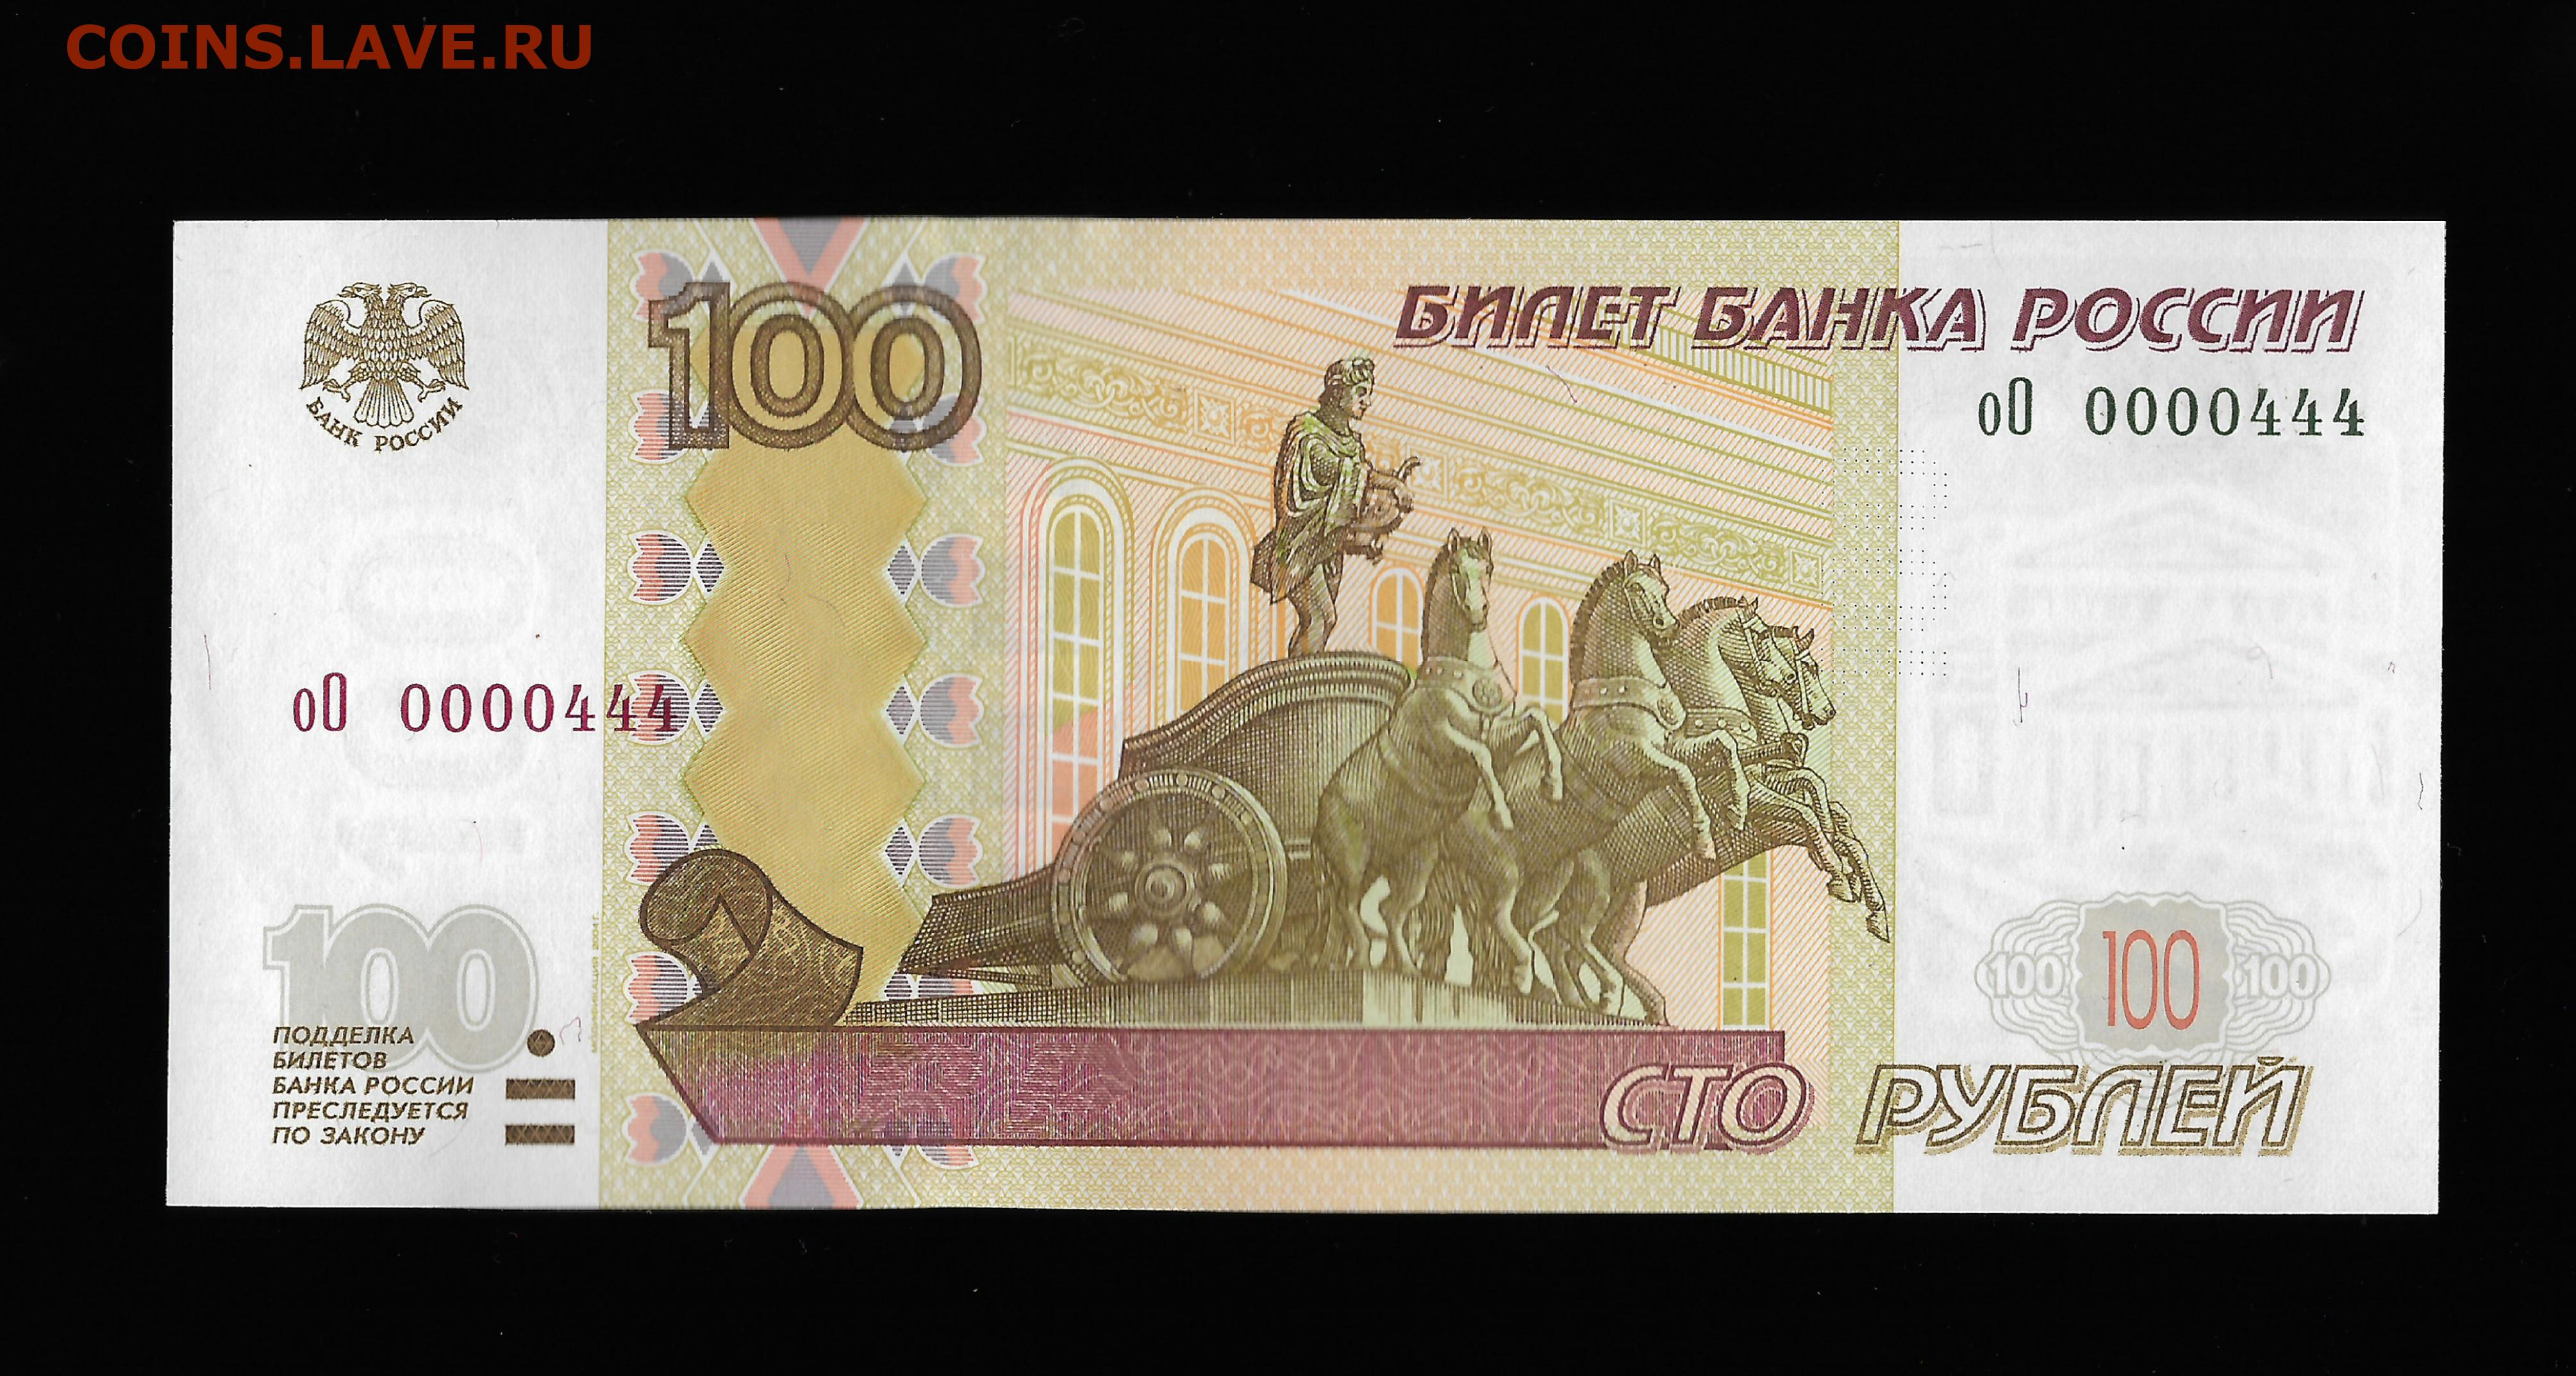 19 300 в рублях. Купюра 100 рублей 1997. Купюра 4 рубля. 4 Тысячи рублей банкнота. Купюры с интересным дизайном.